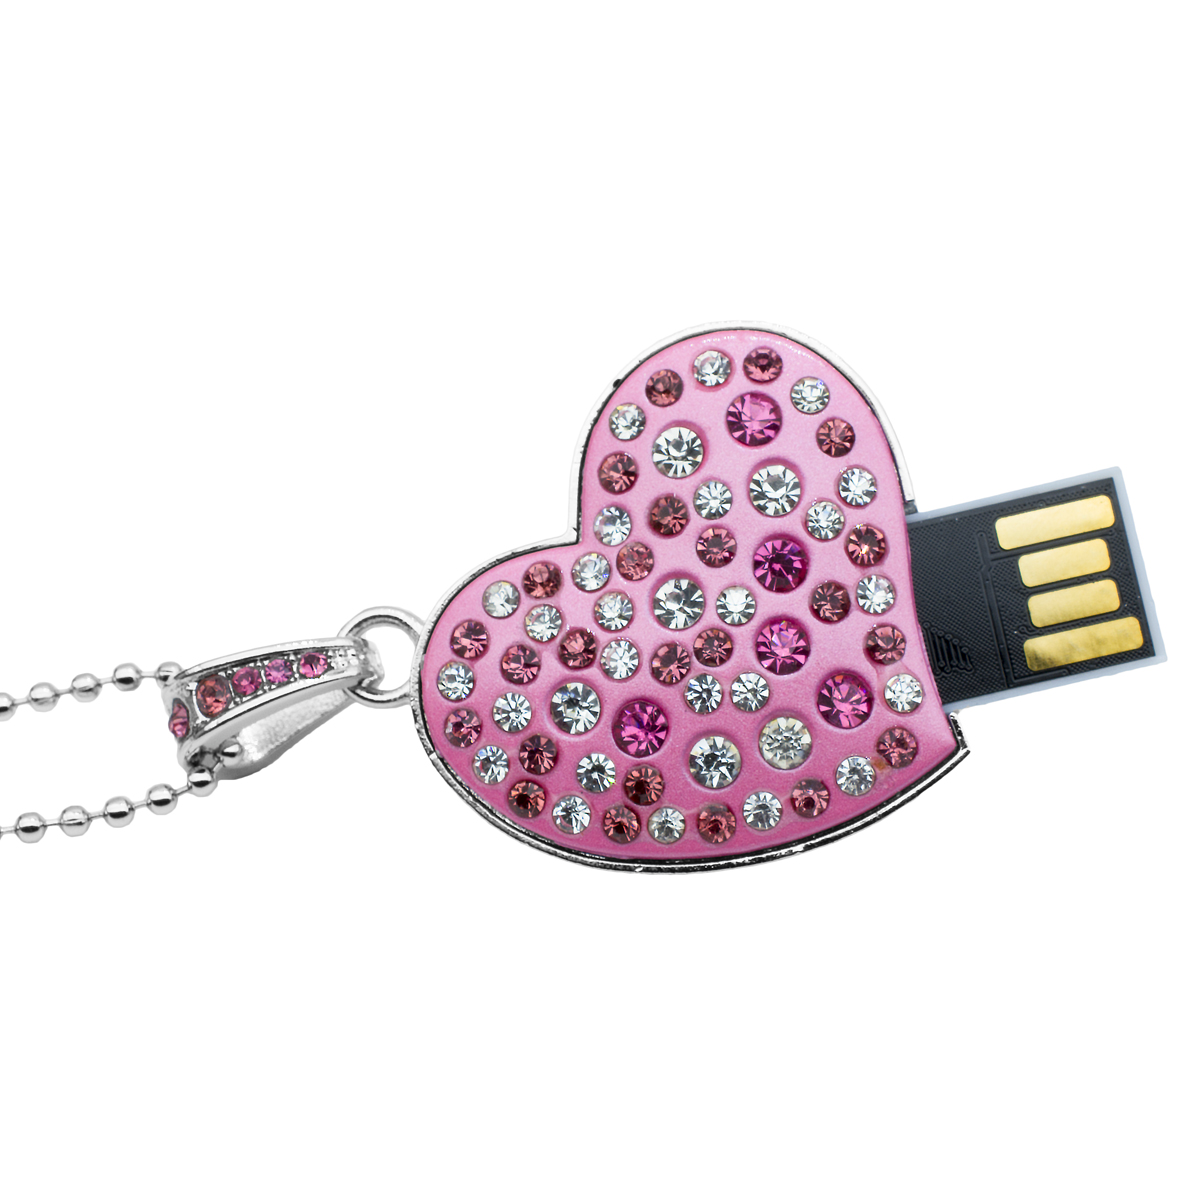 USB con Incrustaciones de Cristales Ocean Heart A4-13-36